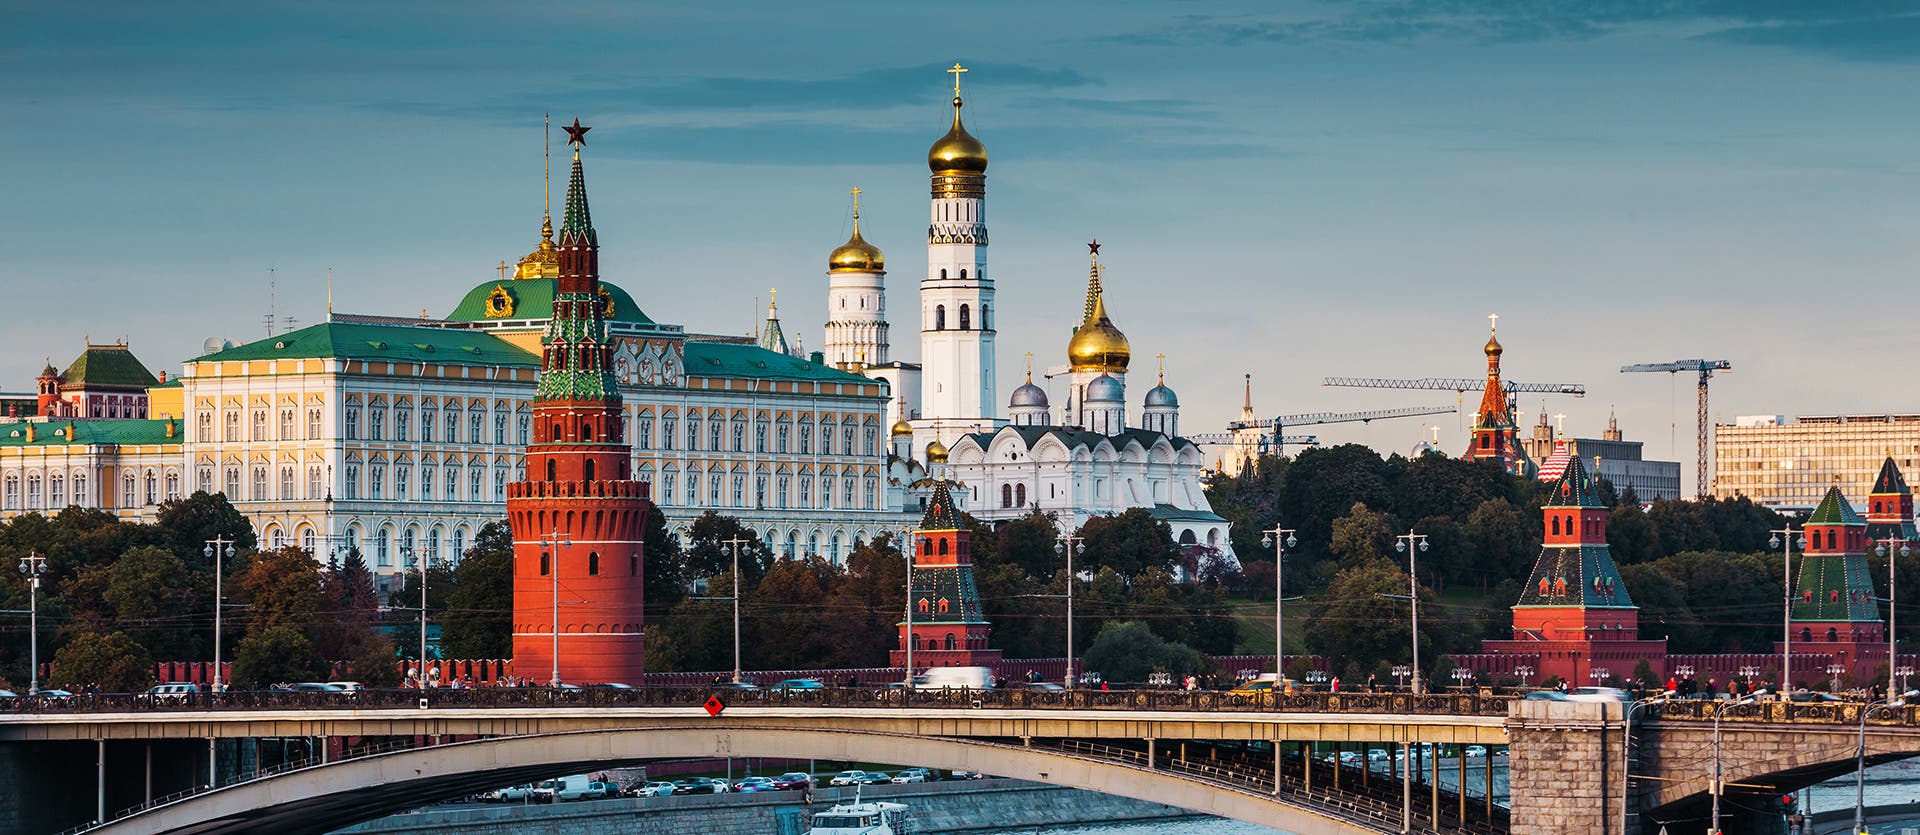 Sehenswertes in Russland Kremlin